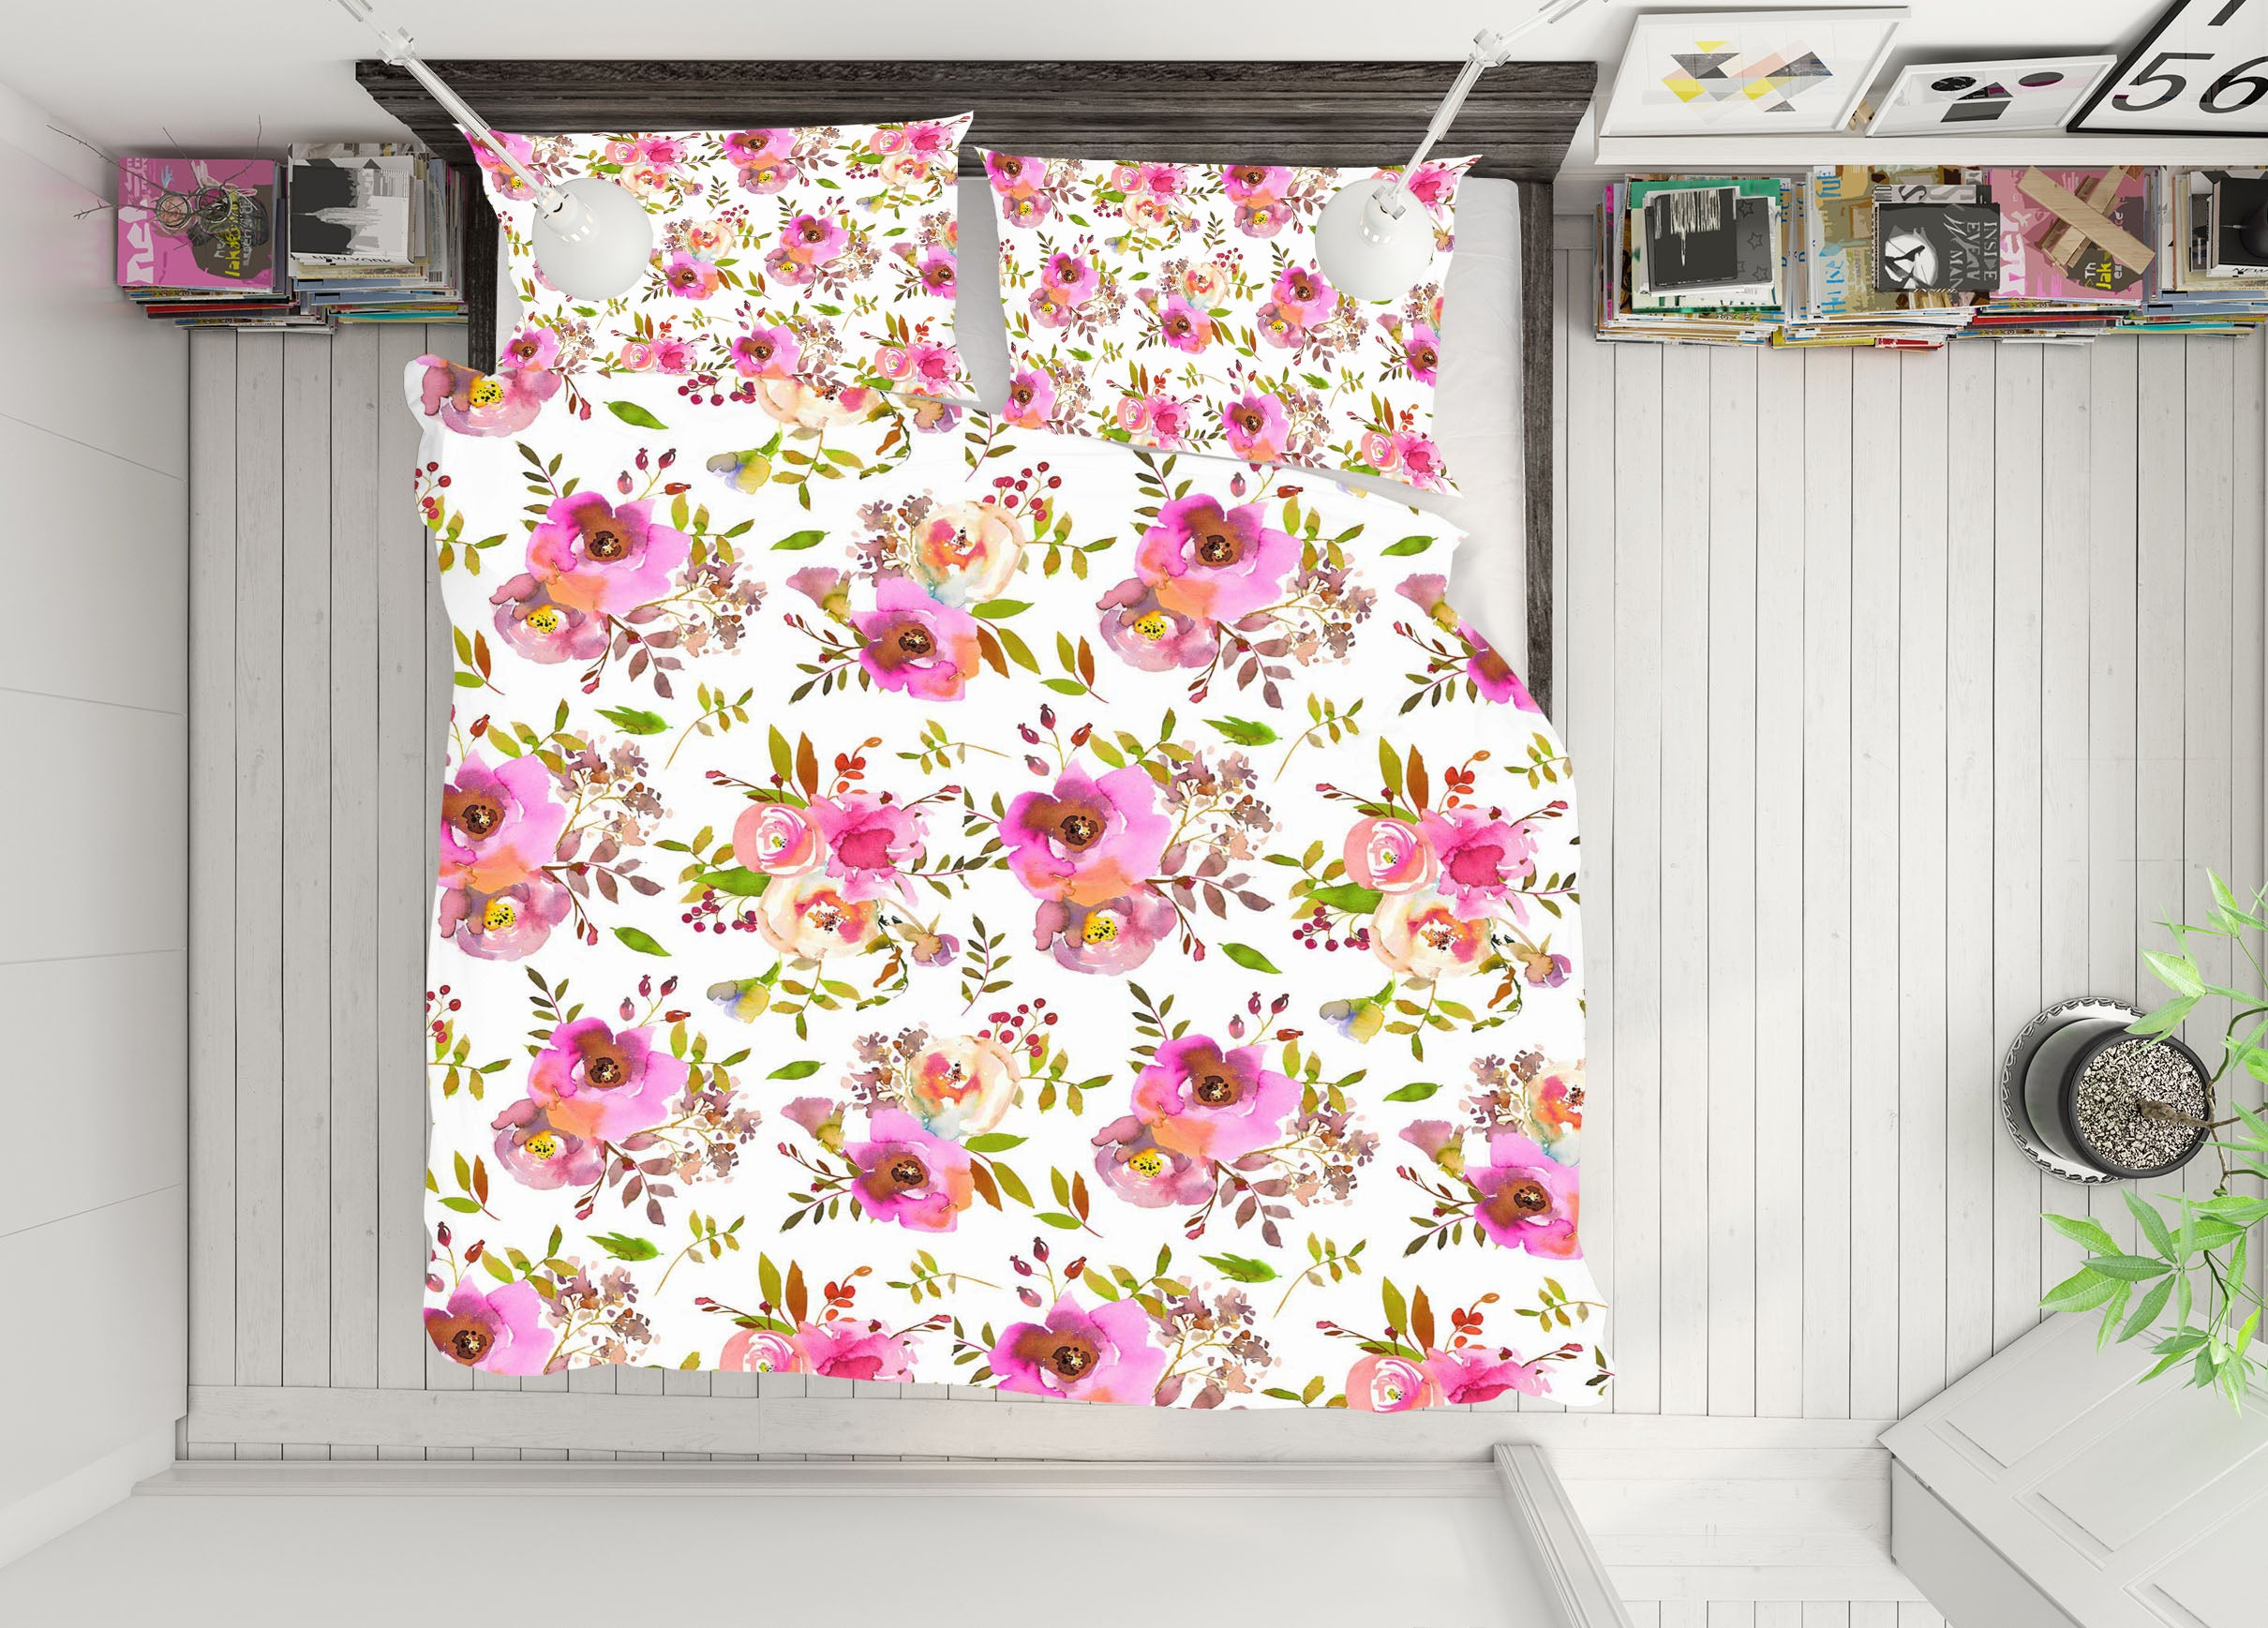 3D Floral Pattern 064 Uta Naumann Bedding Bed Pillowcases Quilt